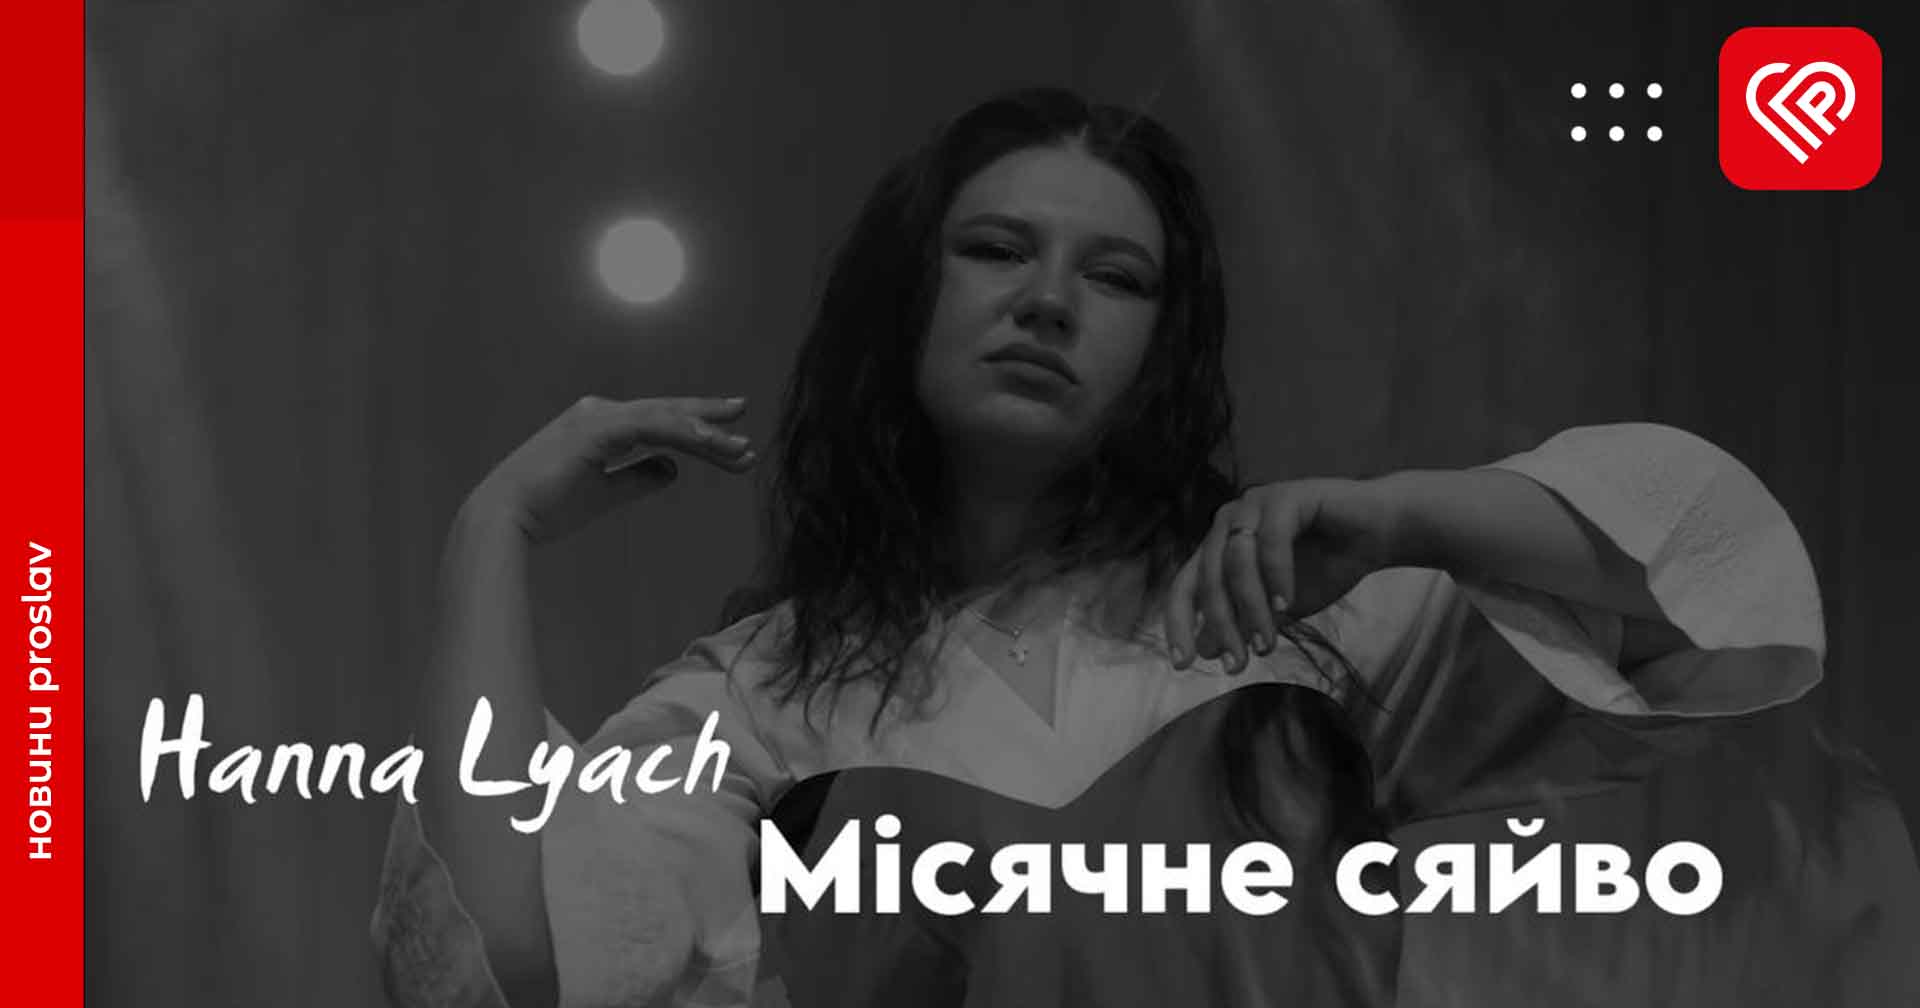 Переяславська співачка Ганна Ляч презентувала свою авторську пісню «Місячне сяйво» та кліп до неї